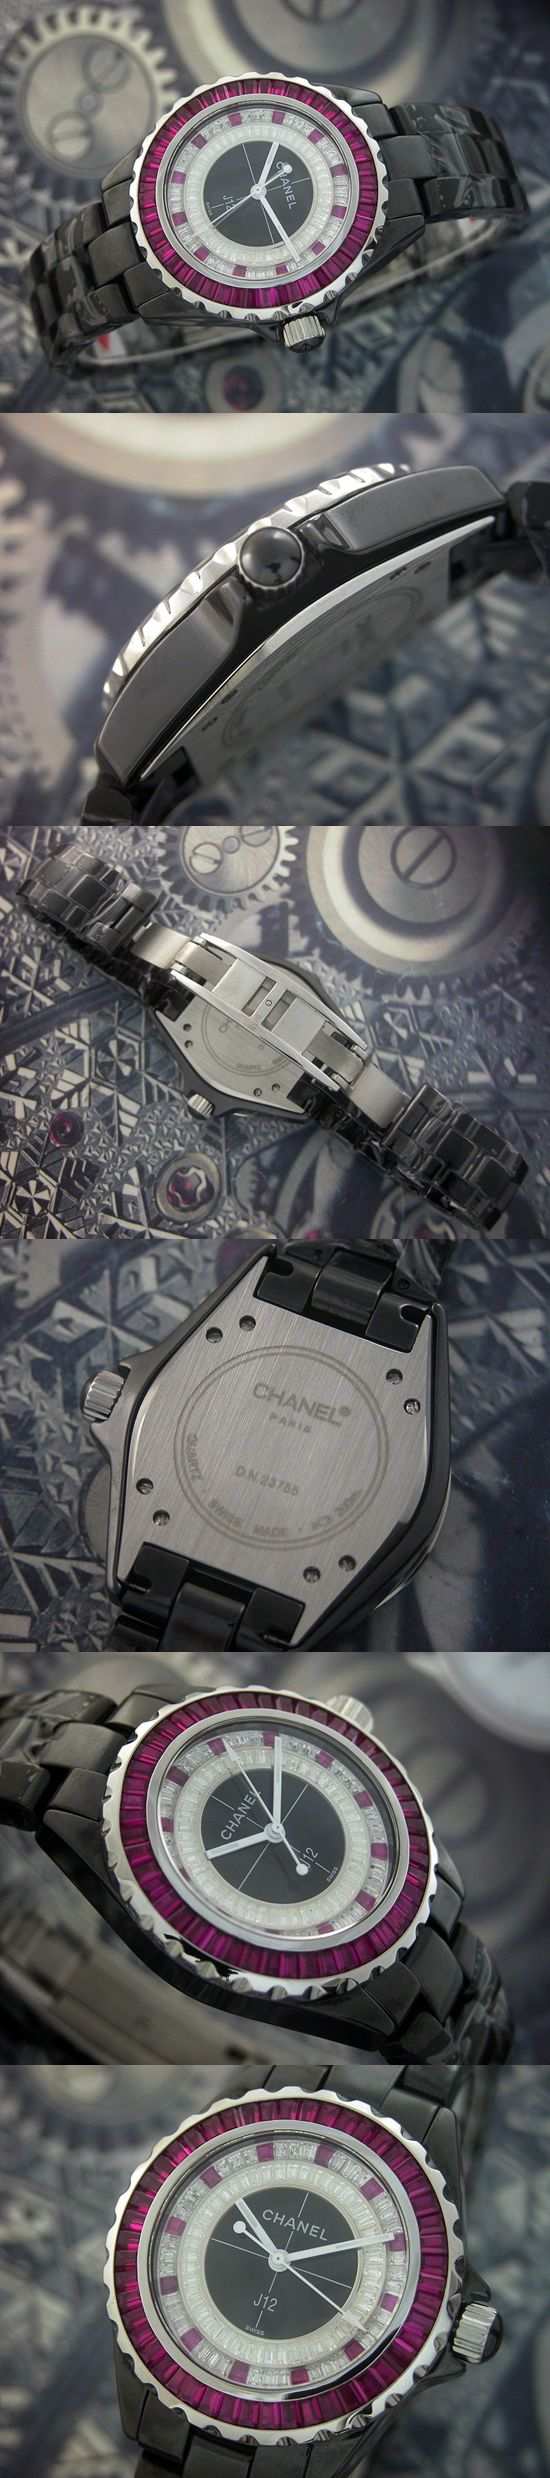 おしゃれなブランド時計がシャネル-CHANEL-H1748-an-J12-男性用を提供します.